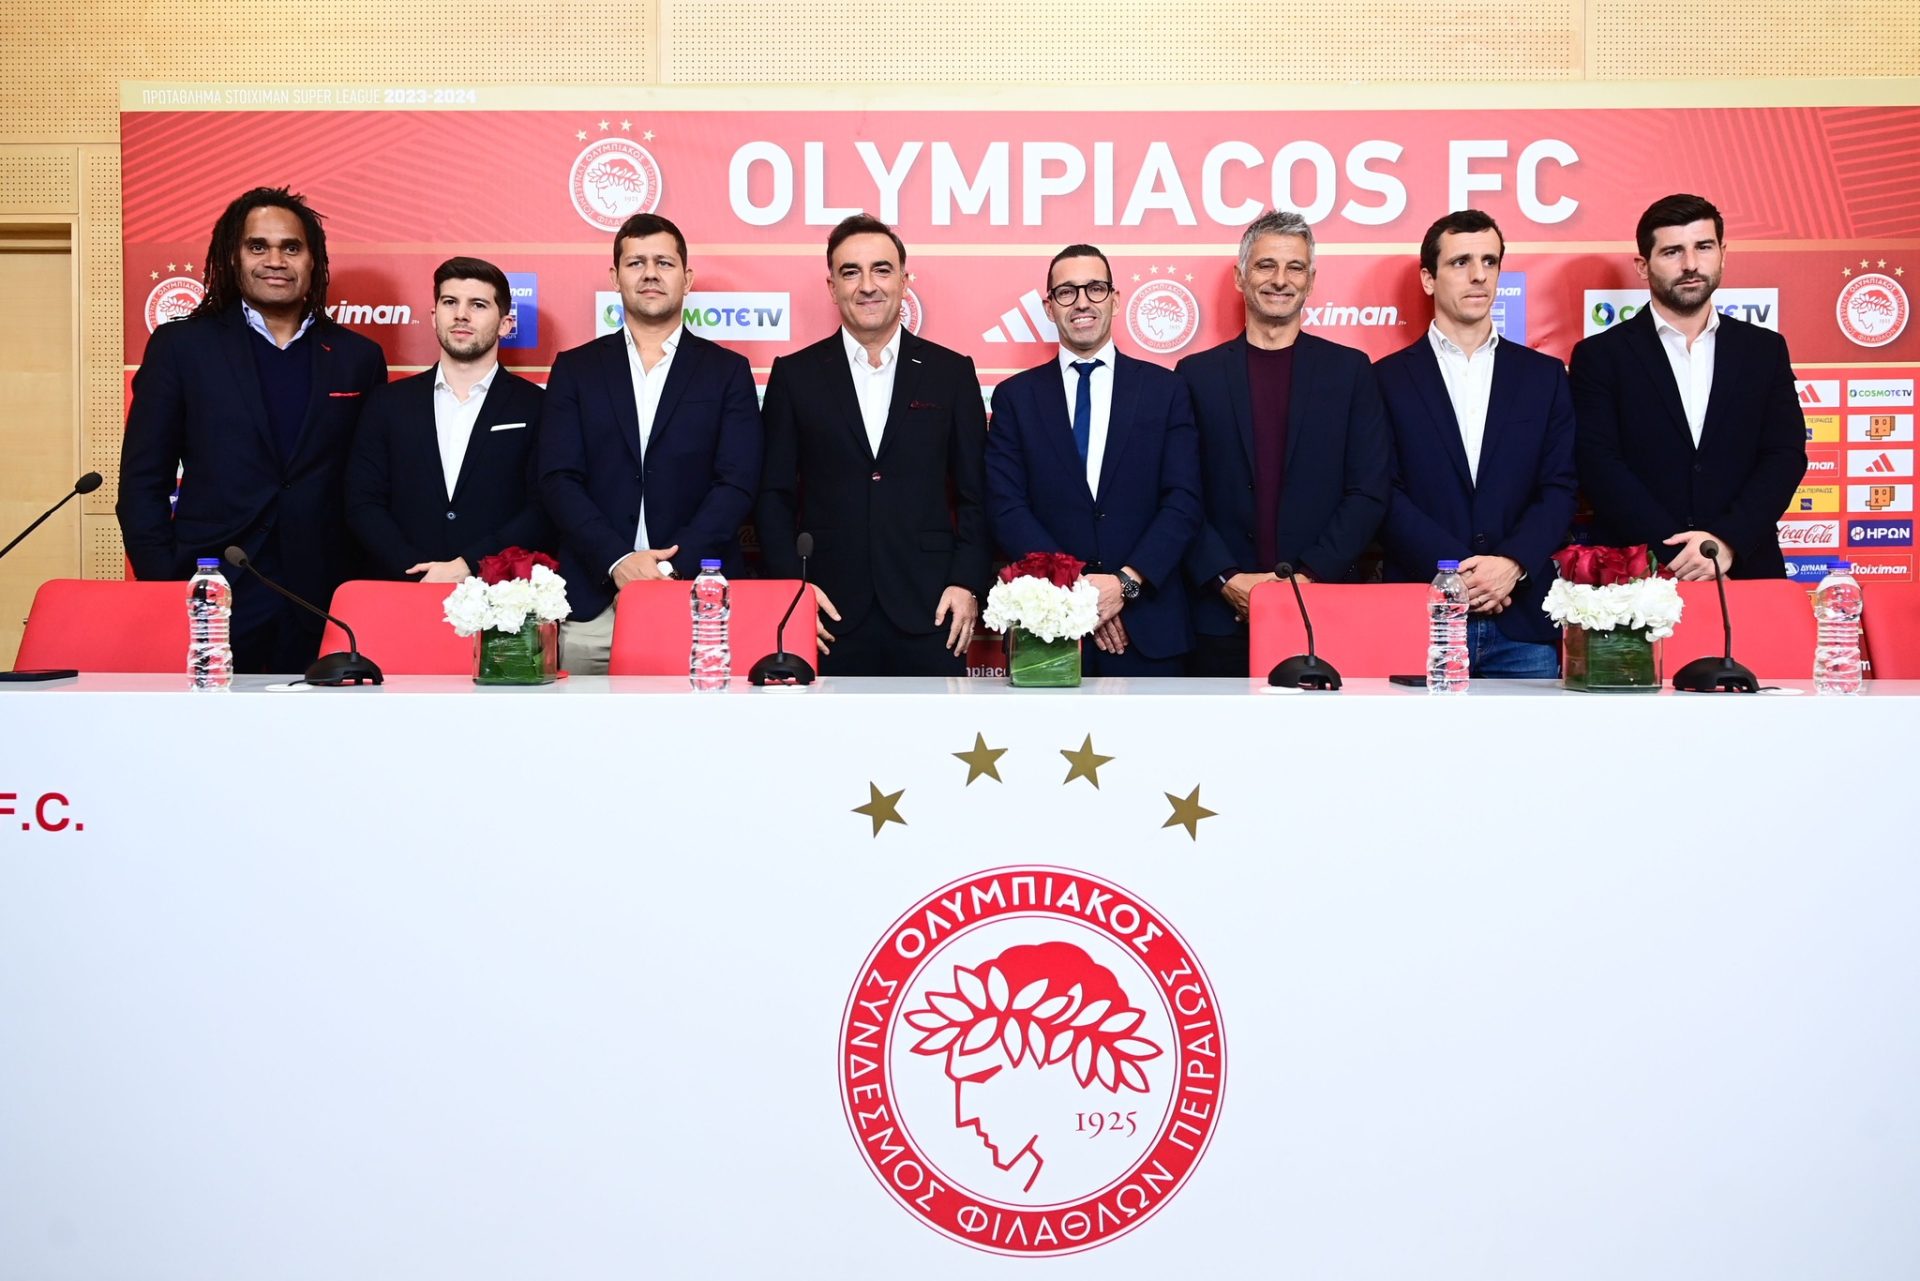 Carlos Carvalhal assume comando técnico do Olympiacos